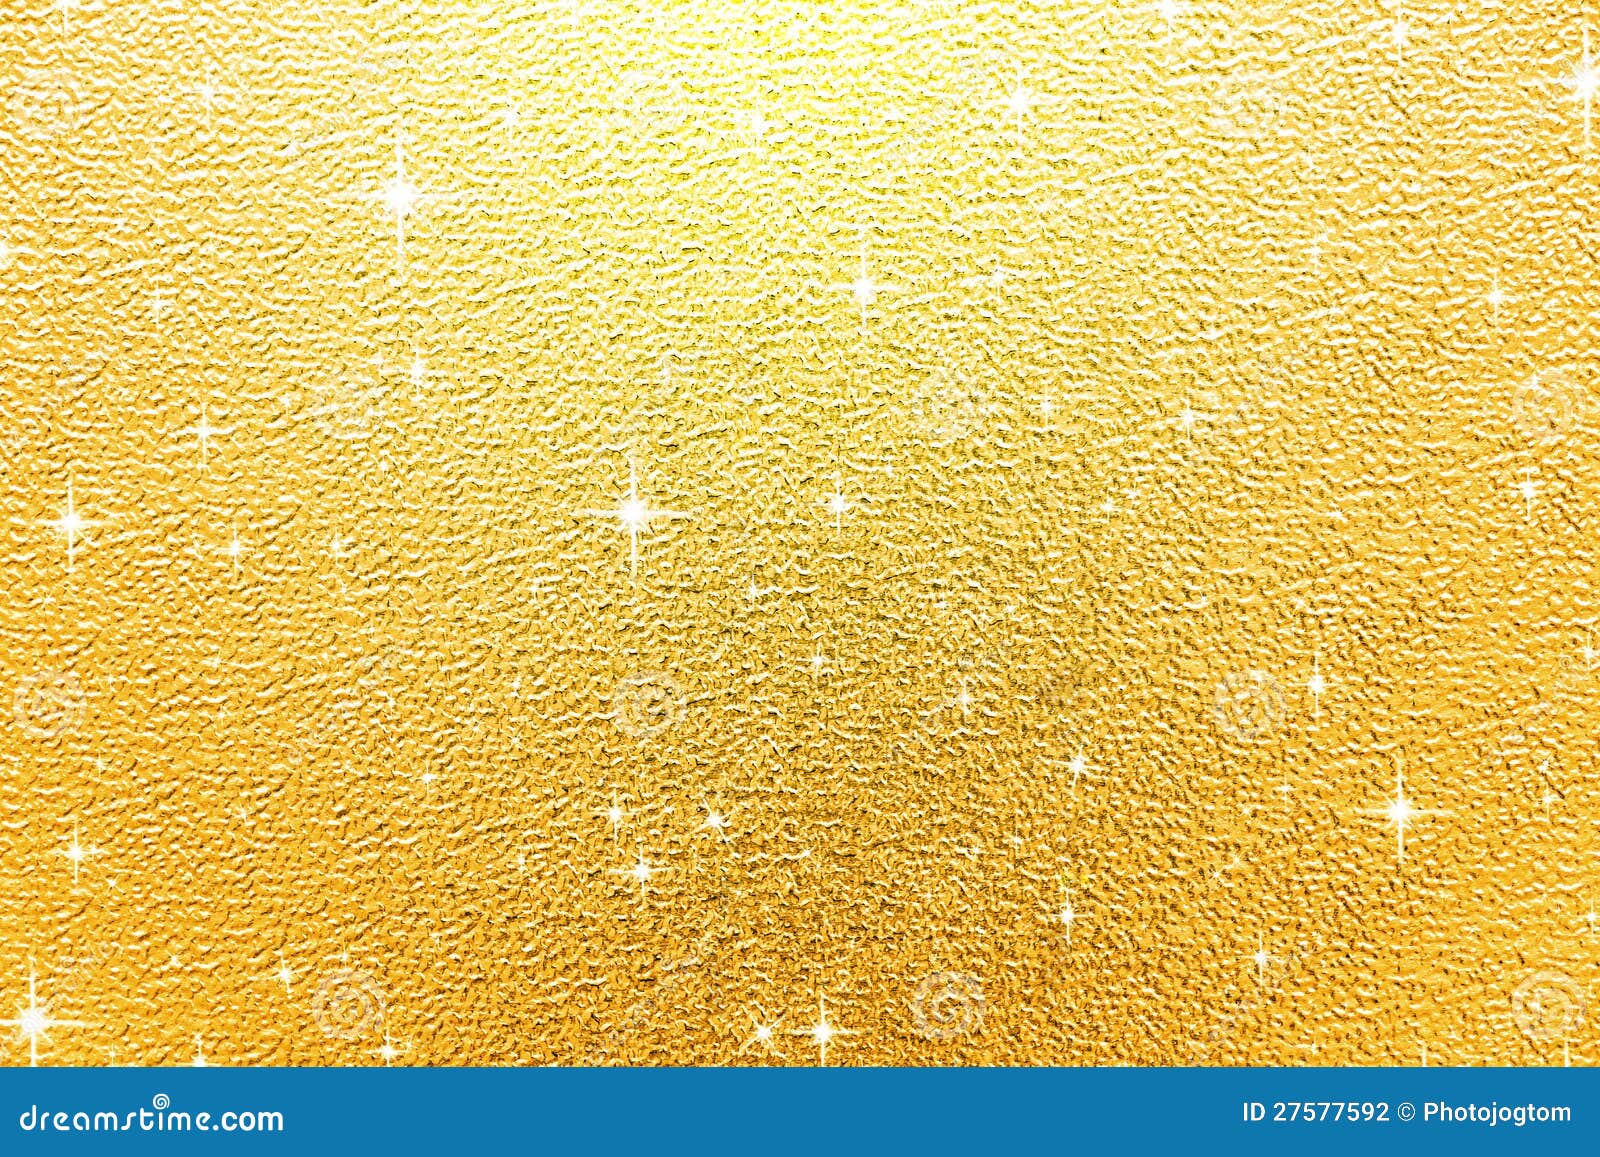 Gold shiny background stock photo. Image of illuminated - 27577592